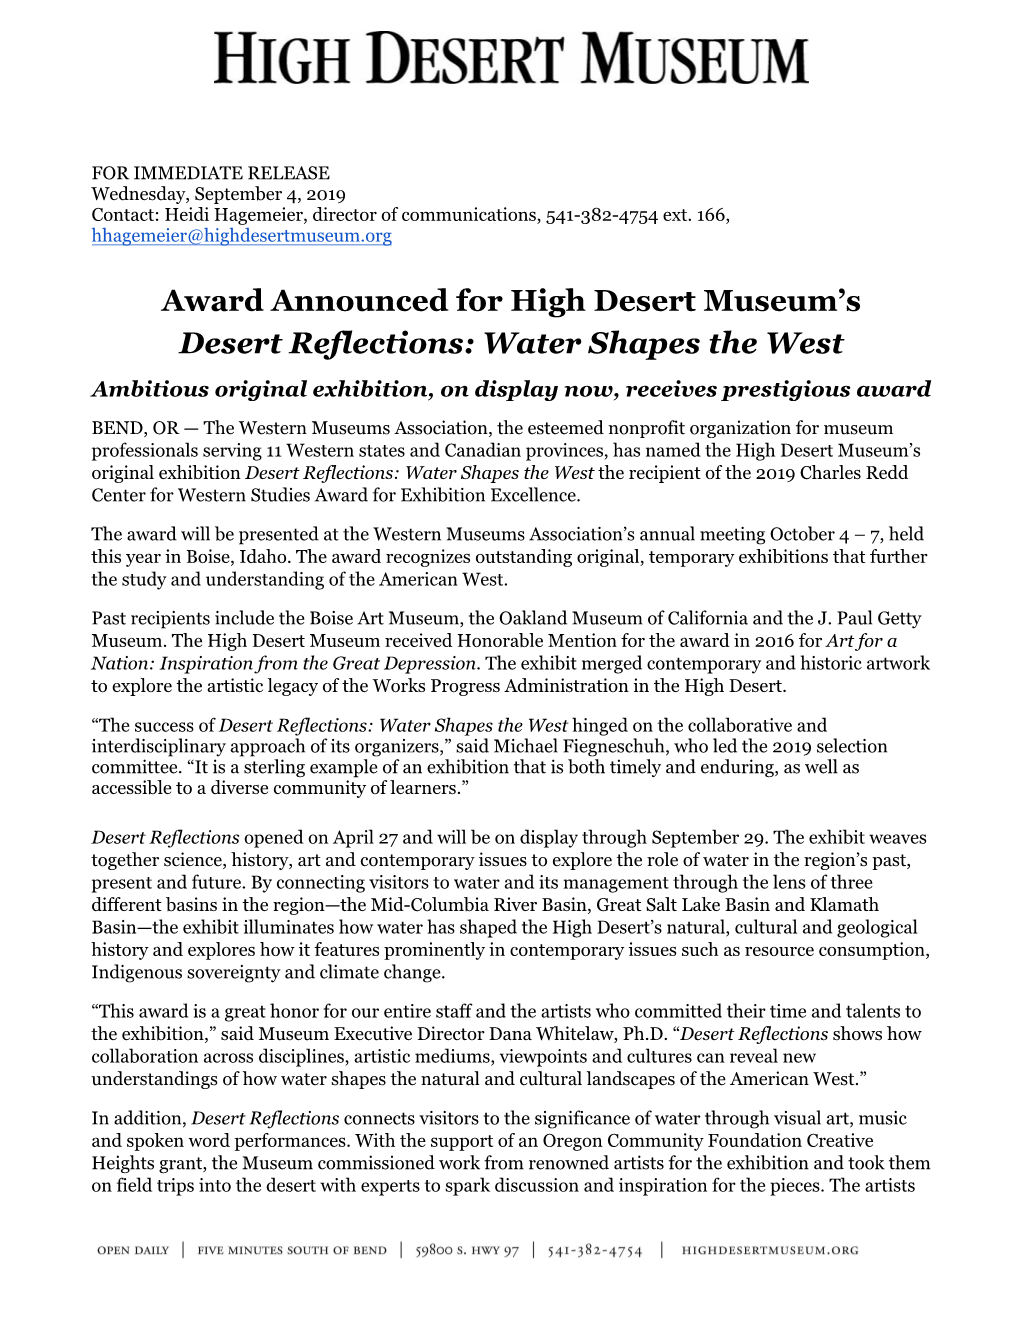 Award Announced for High Desert Museum's Desert Reflections